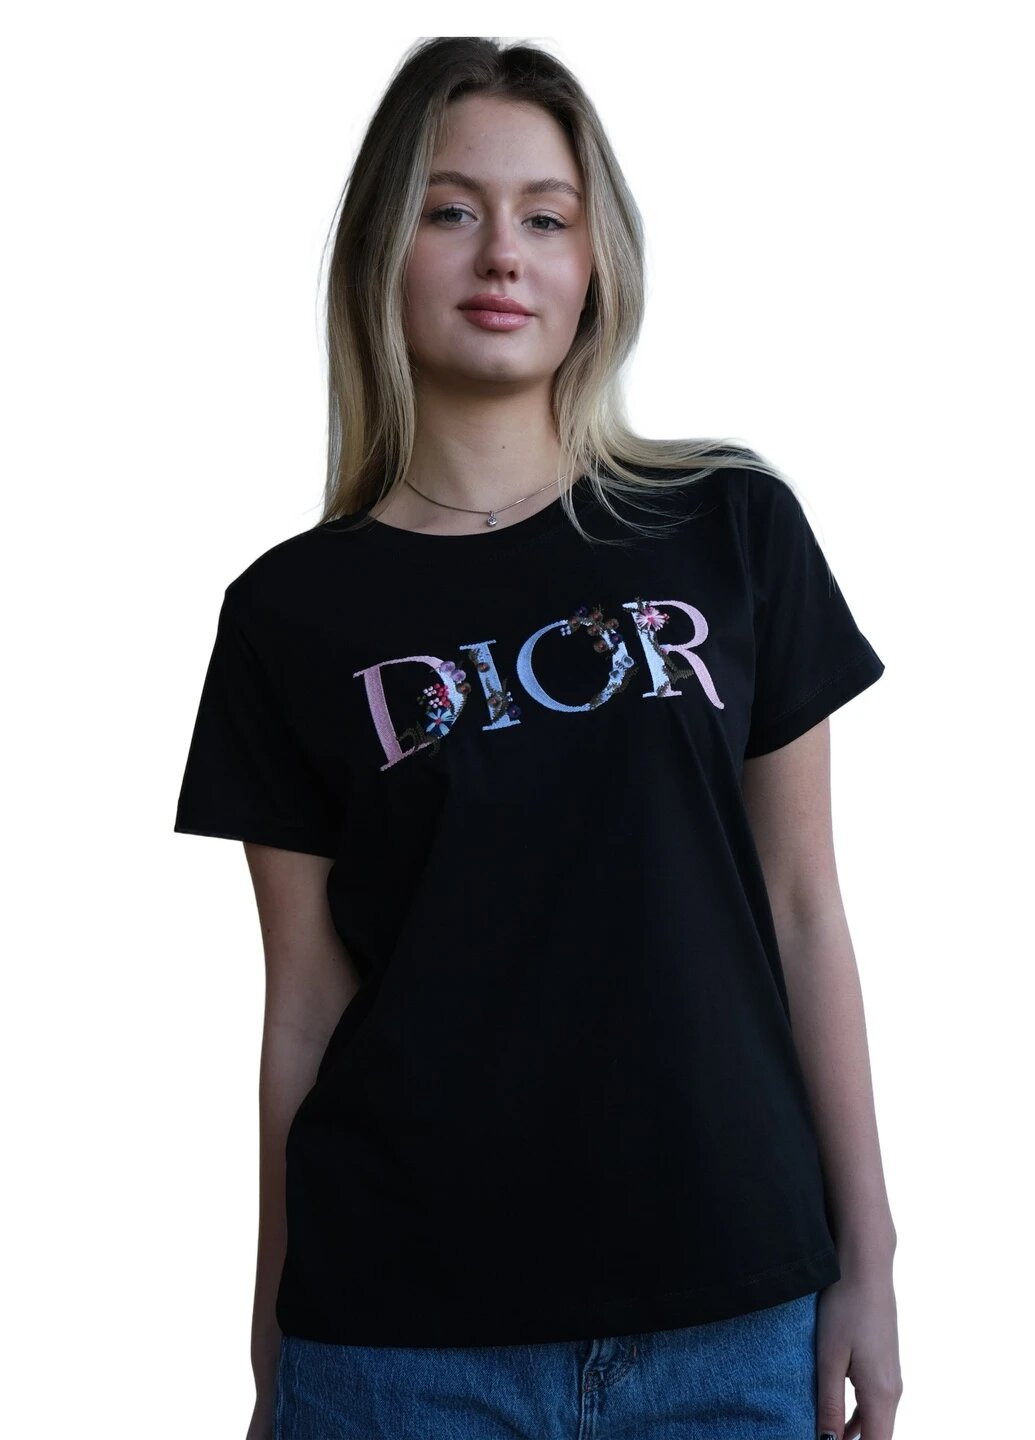 Черная летняя футболка женская с коротким рукавом Dior